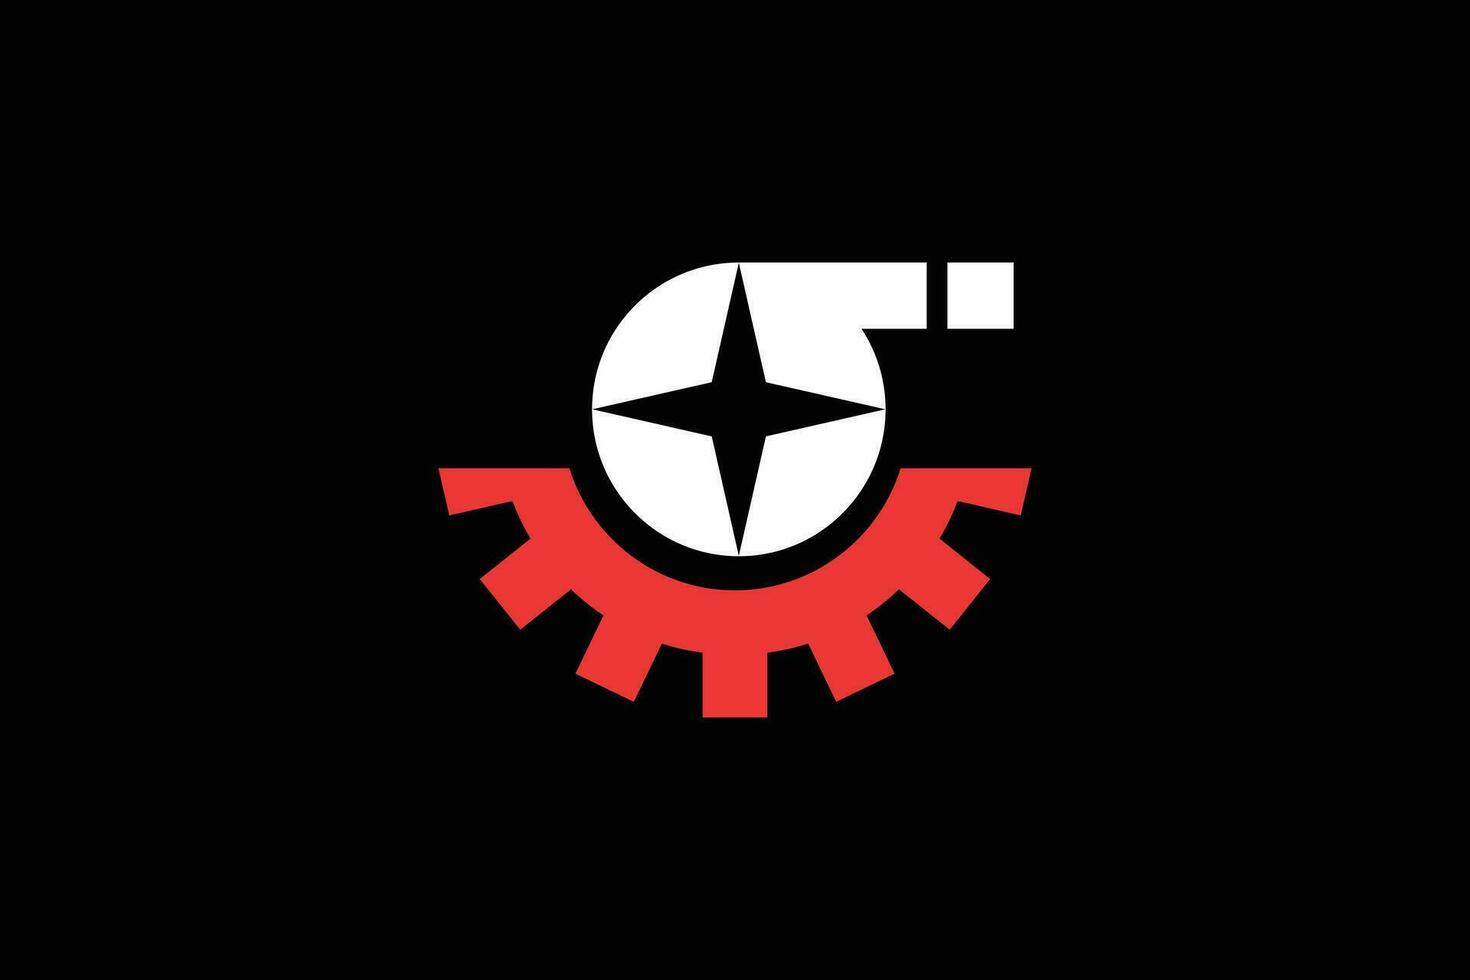 Sigma et équipement branché vecteur logo conception